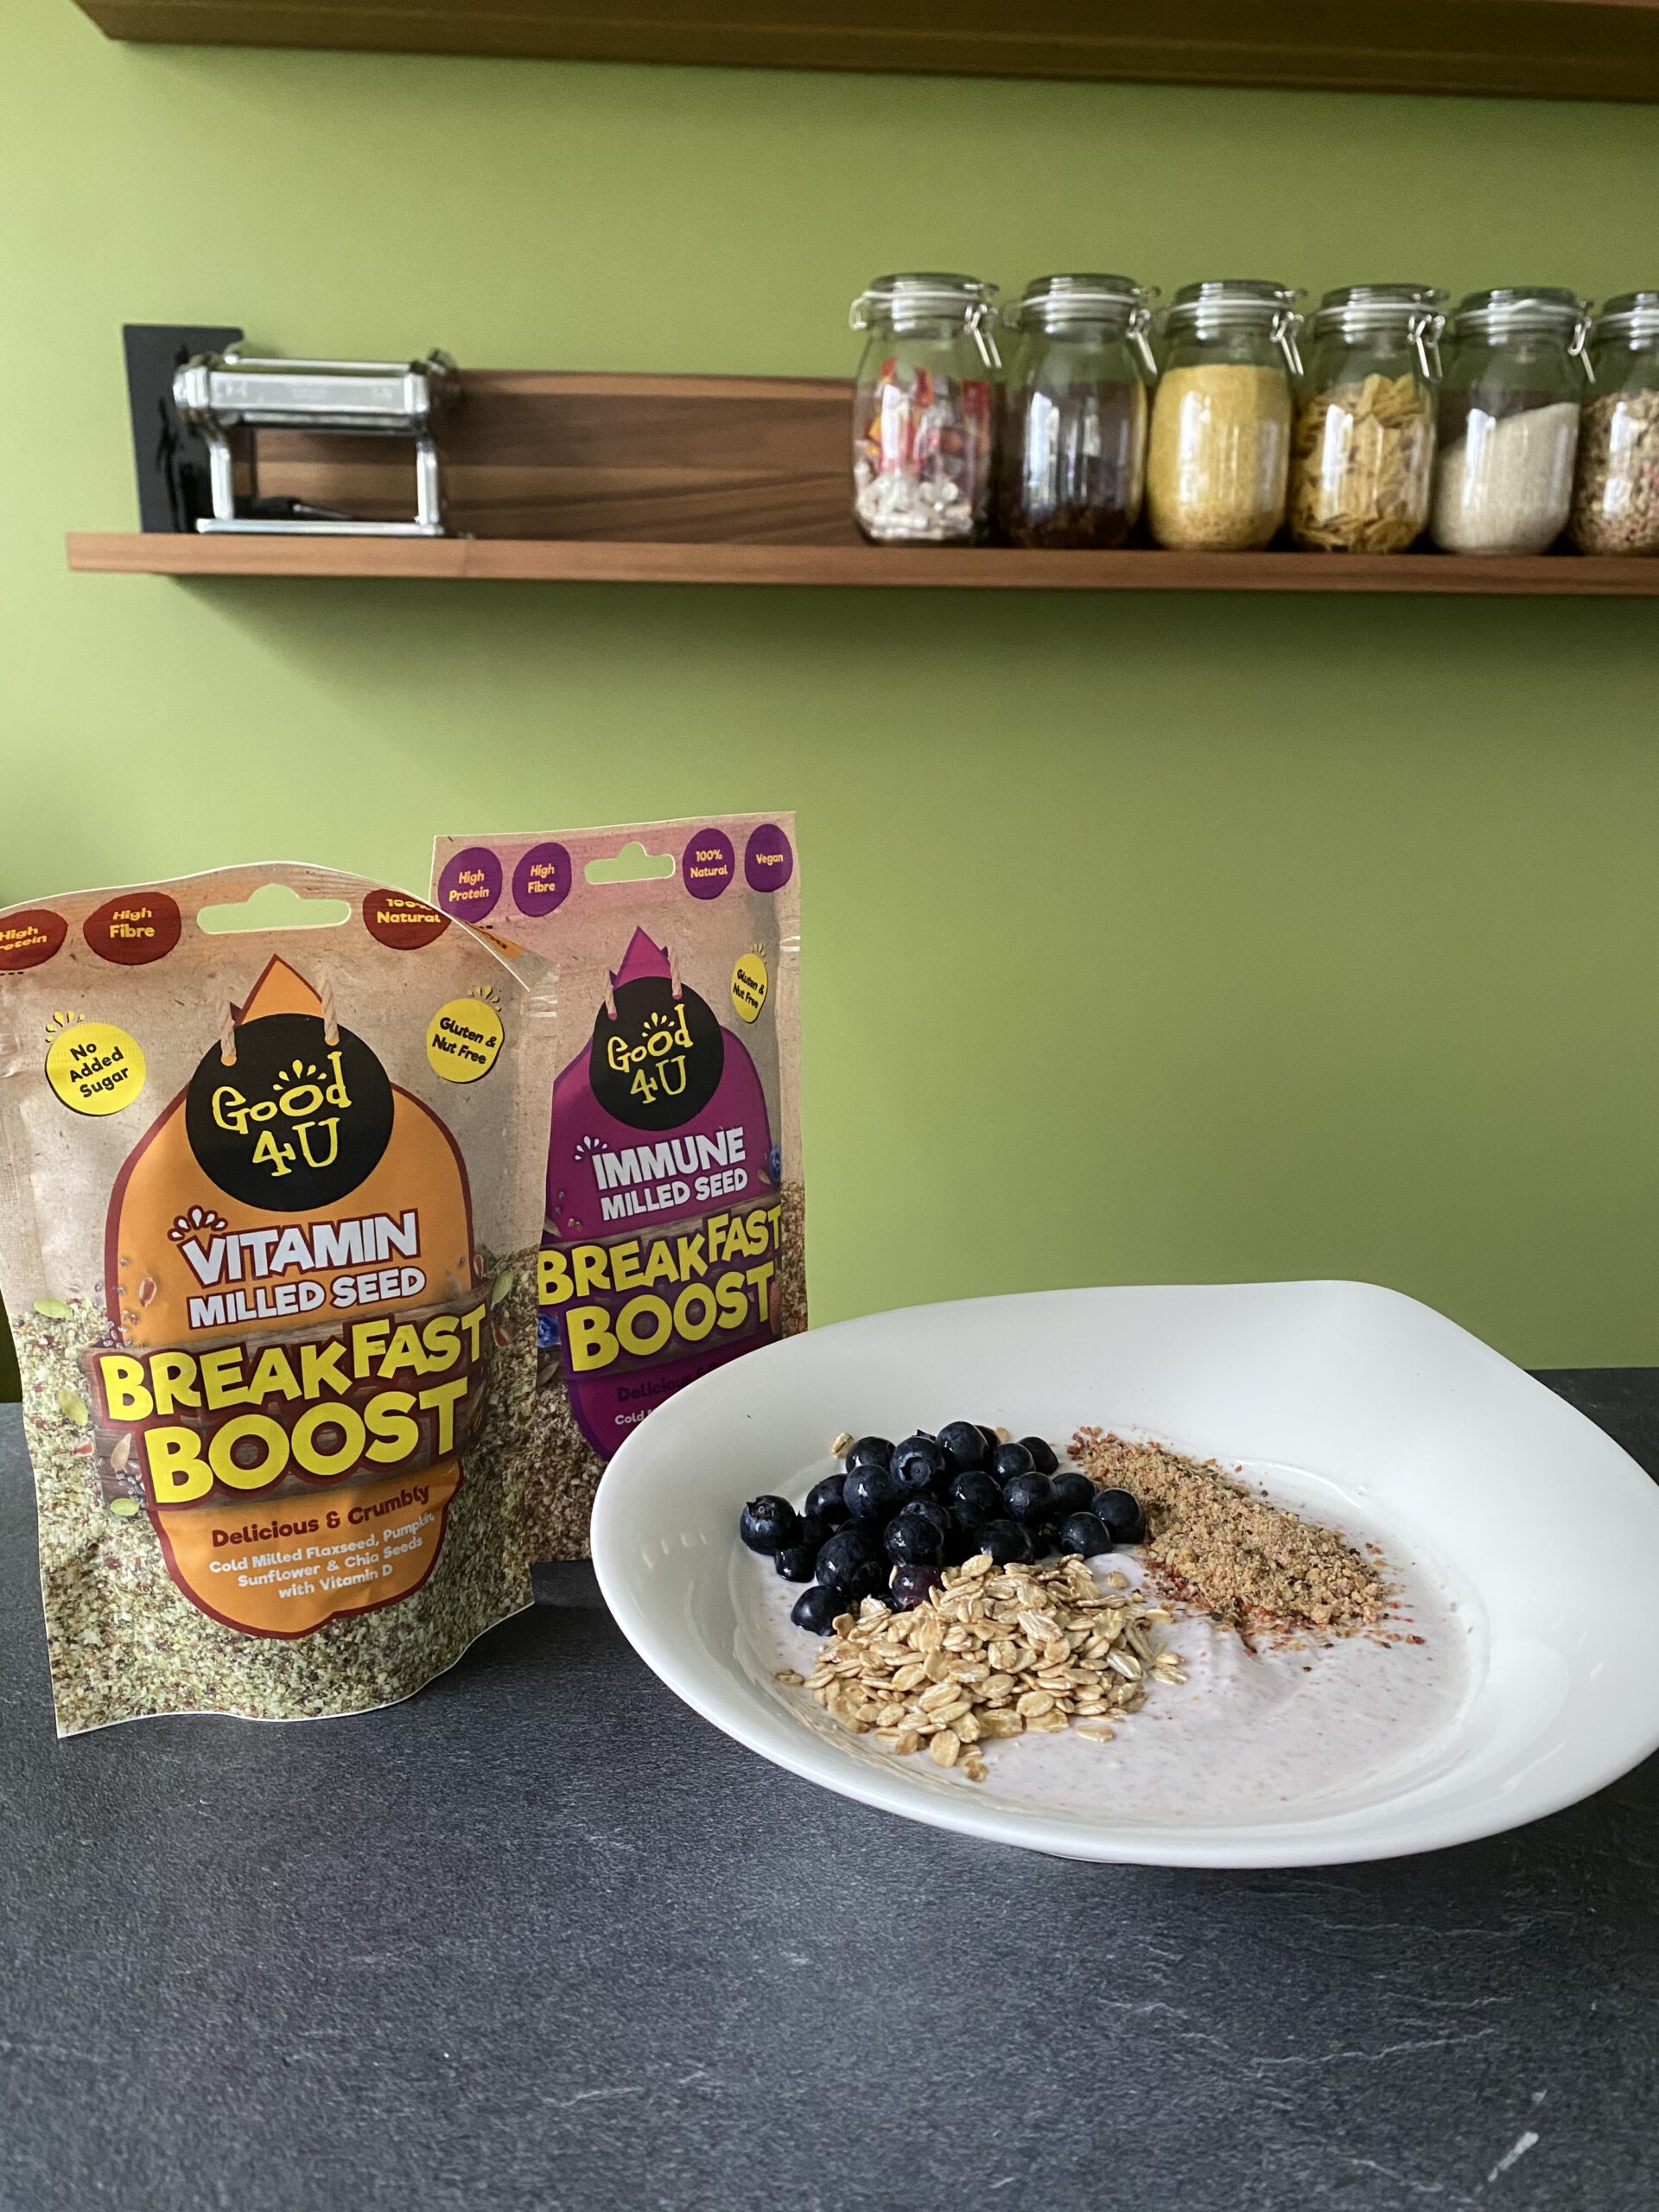 Begin de dag met Good4U Vitamin Milled Seed Breakfast Boost